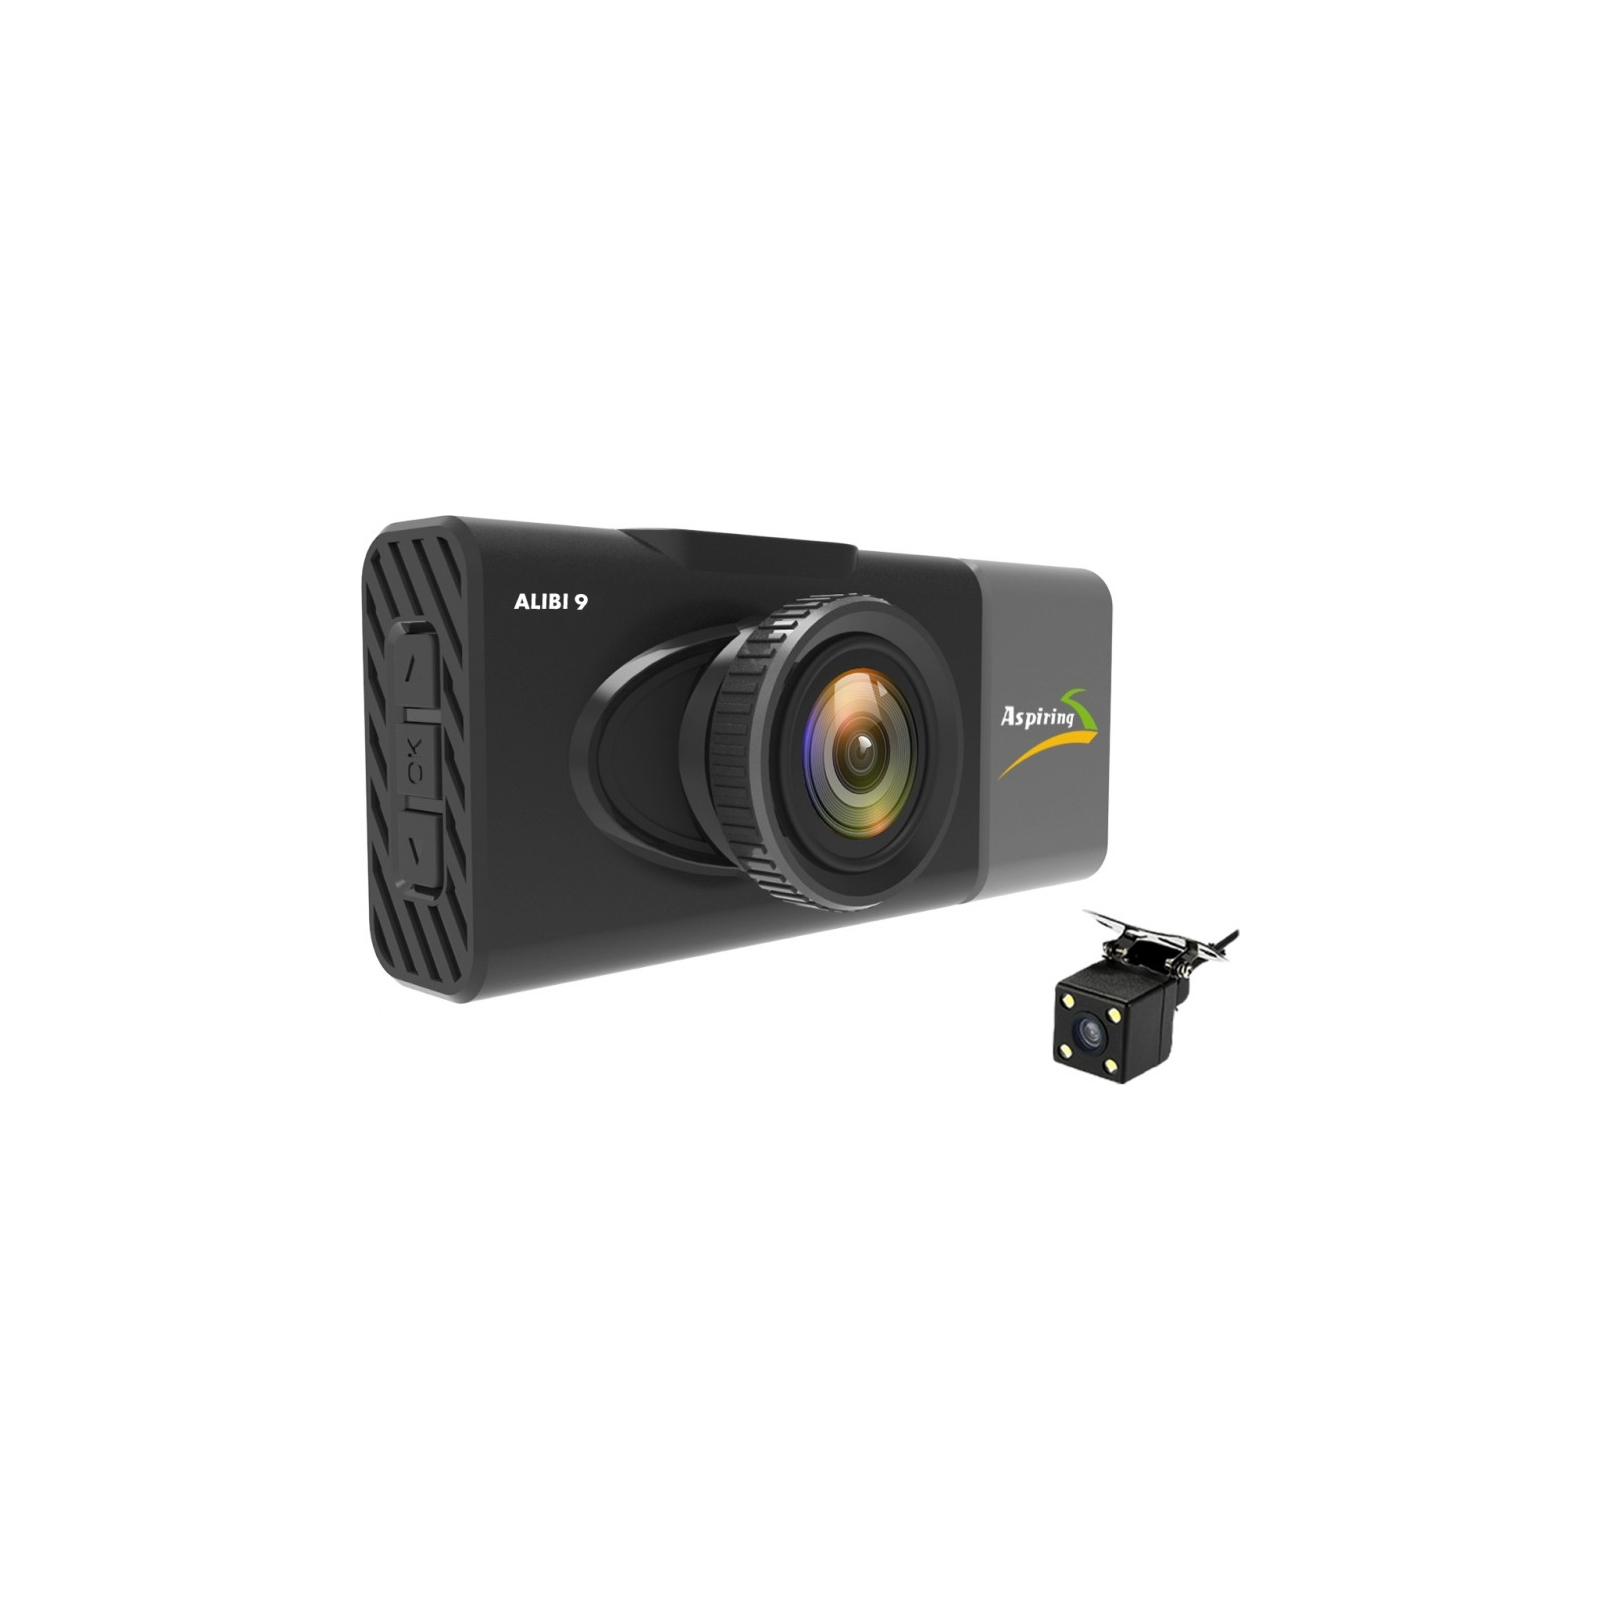 Видеорегистратор Aspiring Alibi 9 GPS, 3 Cameras, Speedcam (Aspiring Alibi 9 GPS, 3 Cameras, Speedcam) изображение 4